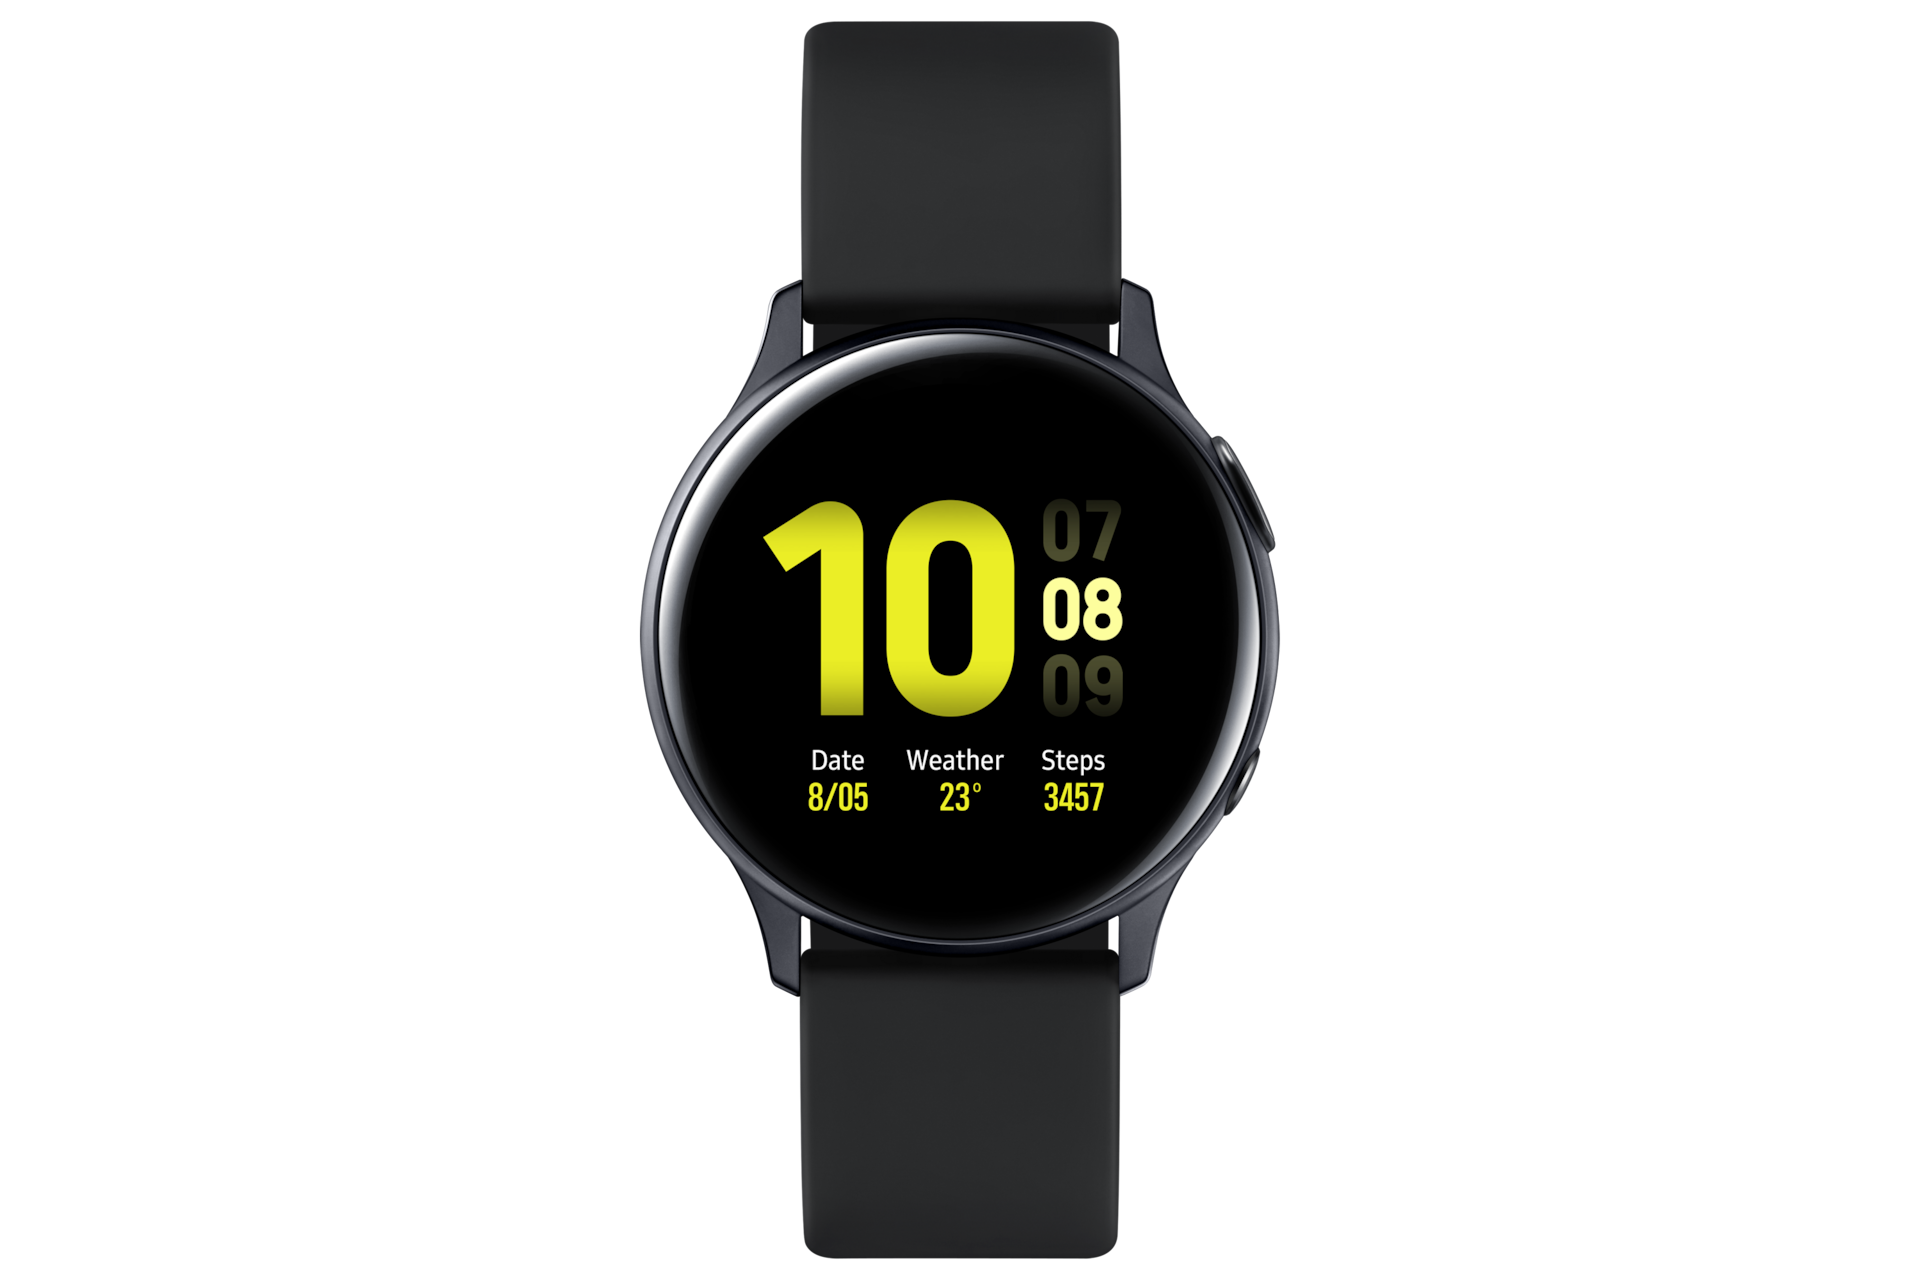 Nâng cấp dòng Galaxy Watch Active với phiên bản mới Galaxy Watch Active2 với thiết kế sang trọng, thông minh và nhiều tính năng hấp dẫn. Hãy xem hình ảnh để tận hưởng trải nghiệm tuyệt vời.